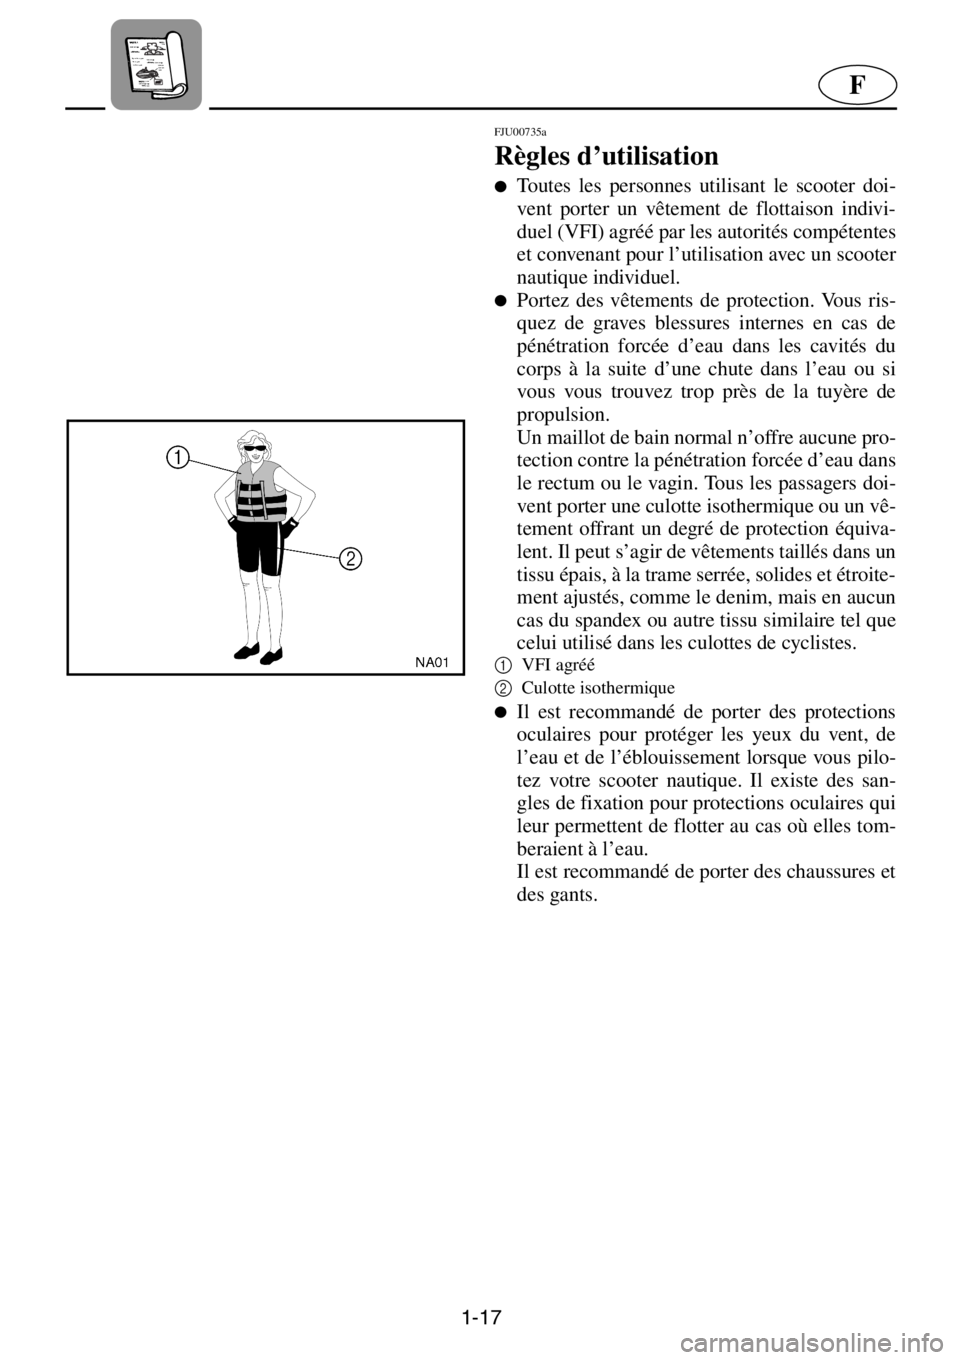 YAMAHA XL 1200 2001  Manuale de Empleo (in Spanish) 1-17
F
FJU00735a 
Règles d’utilisation  
●Toutes les personnes utilisant le scooter doi-
vent porter un vêtement de flottaison indivi-
duel (VFI) agréé par les autorités compétentes
et conve